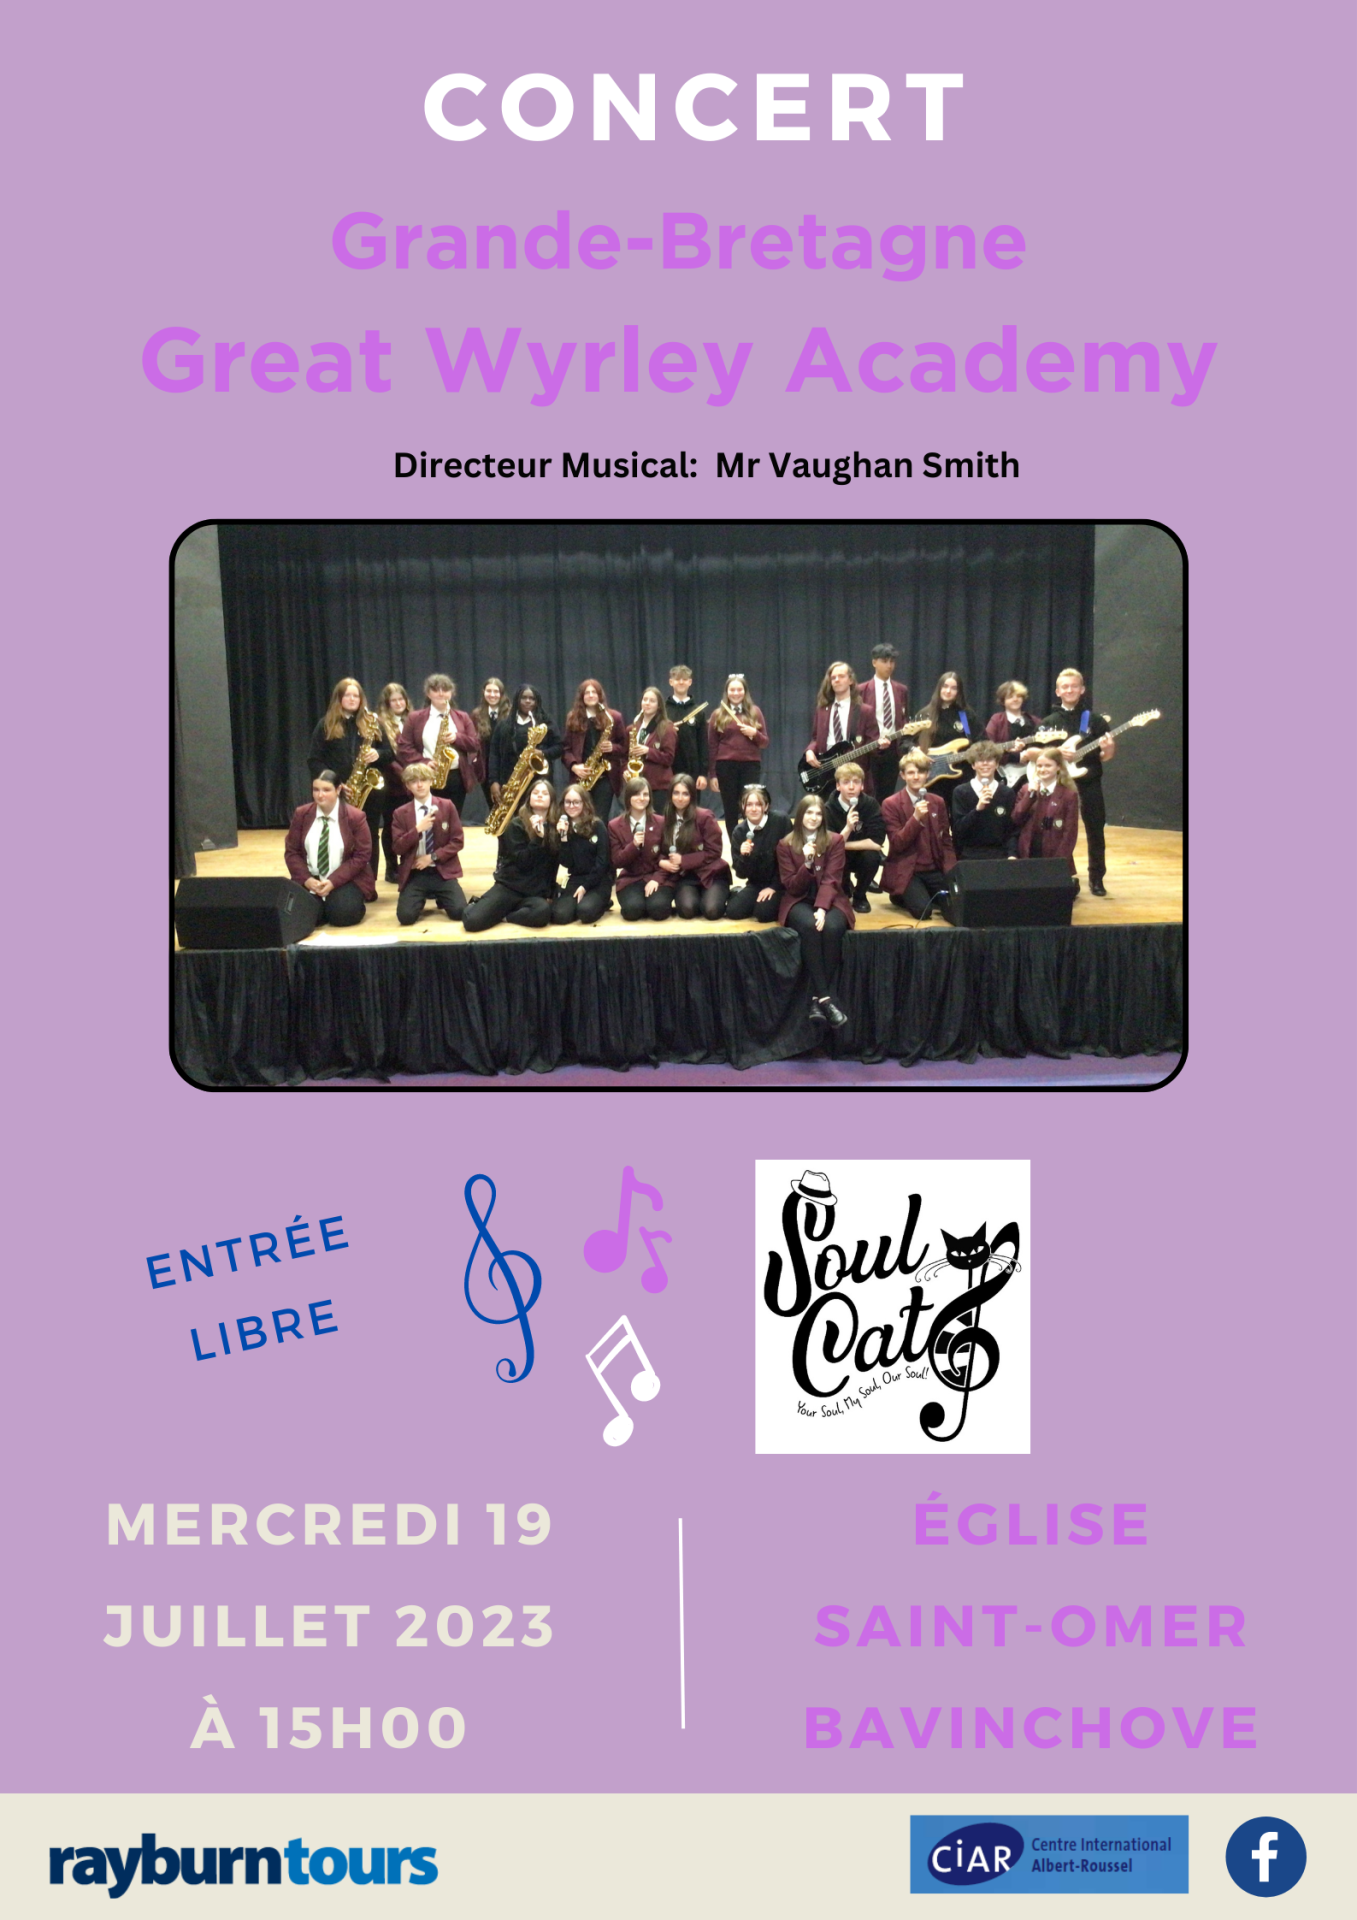 Great wyrley academy web